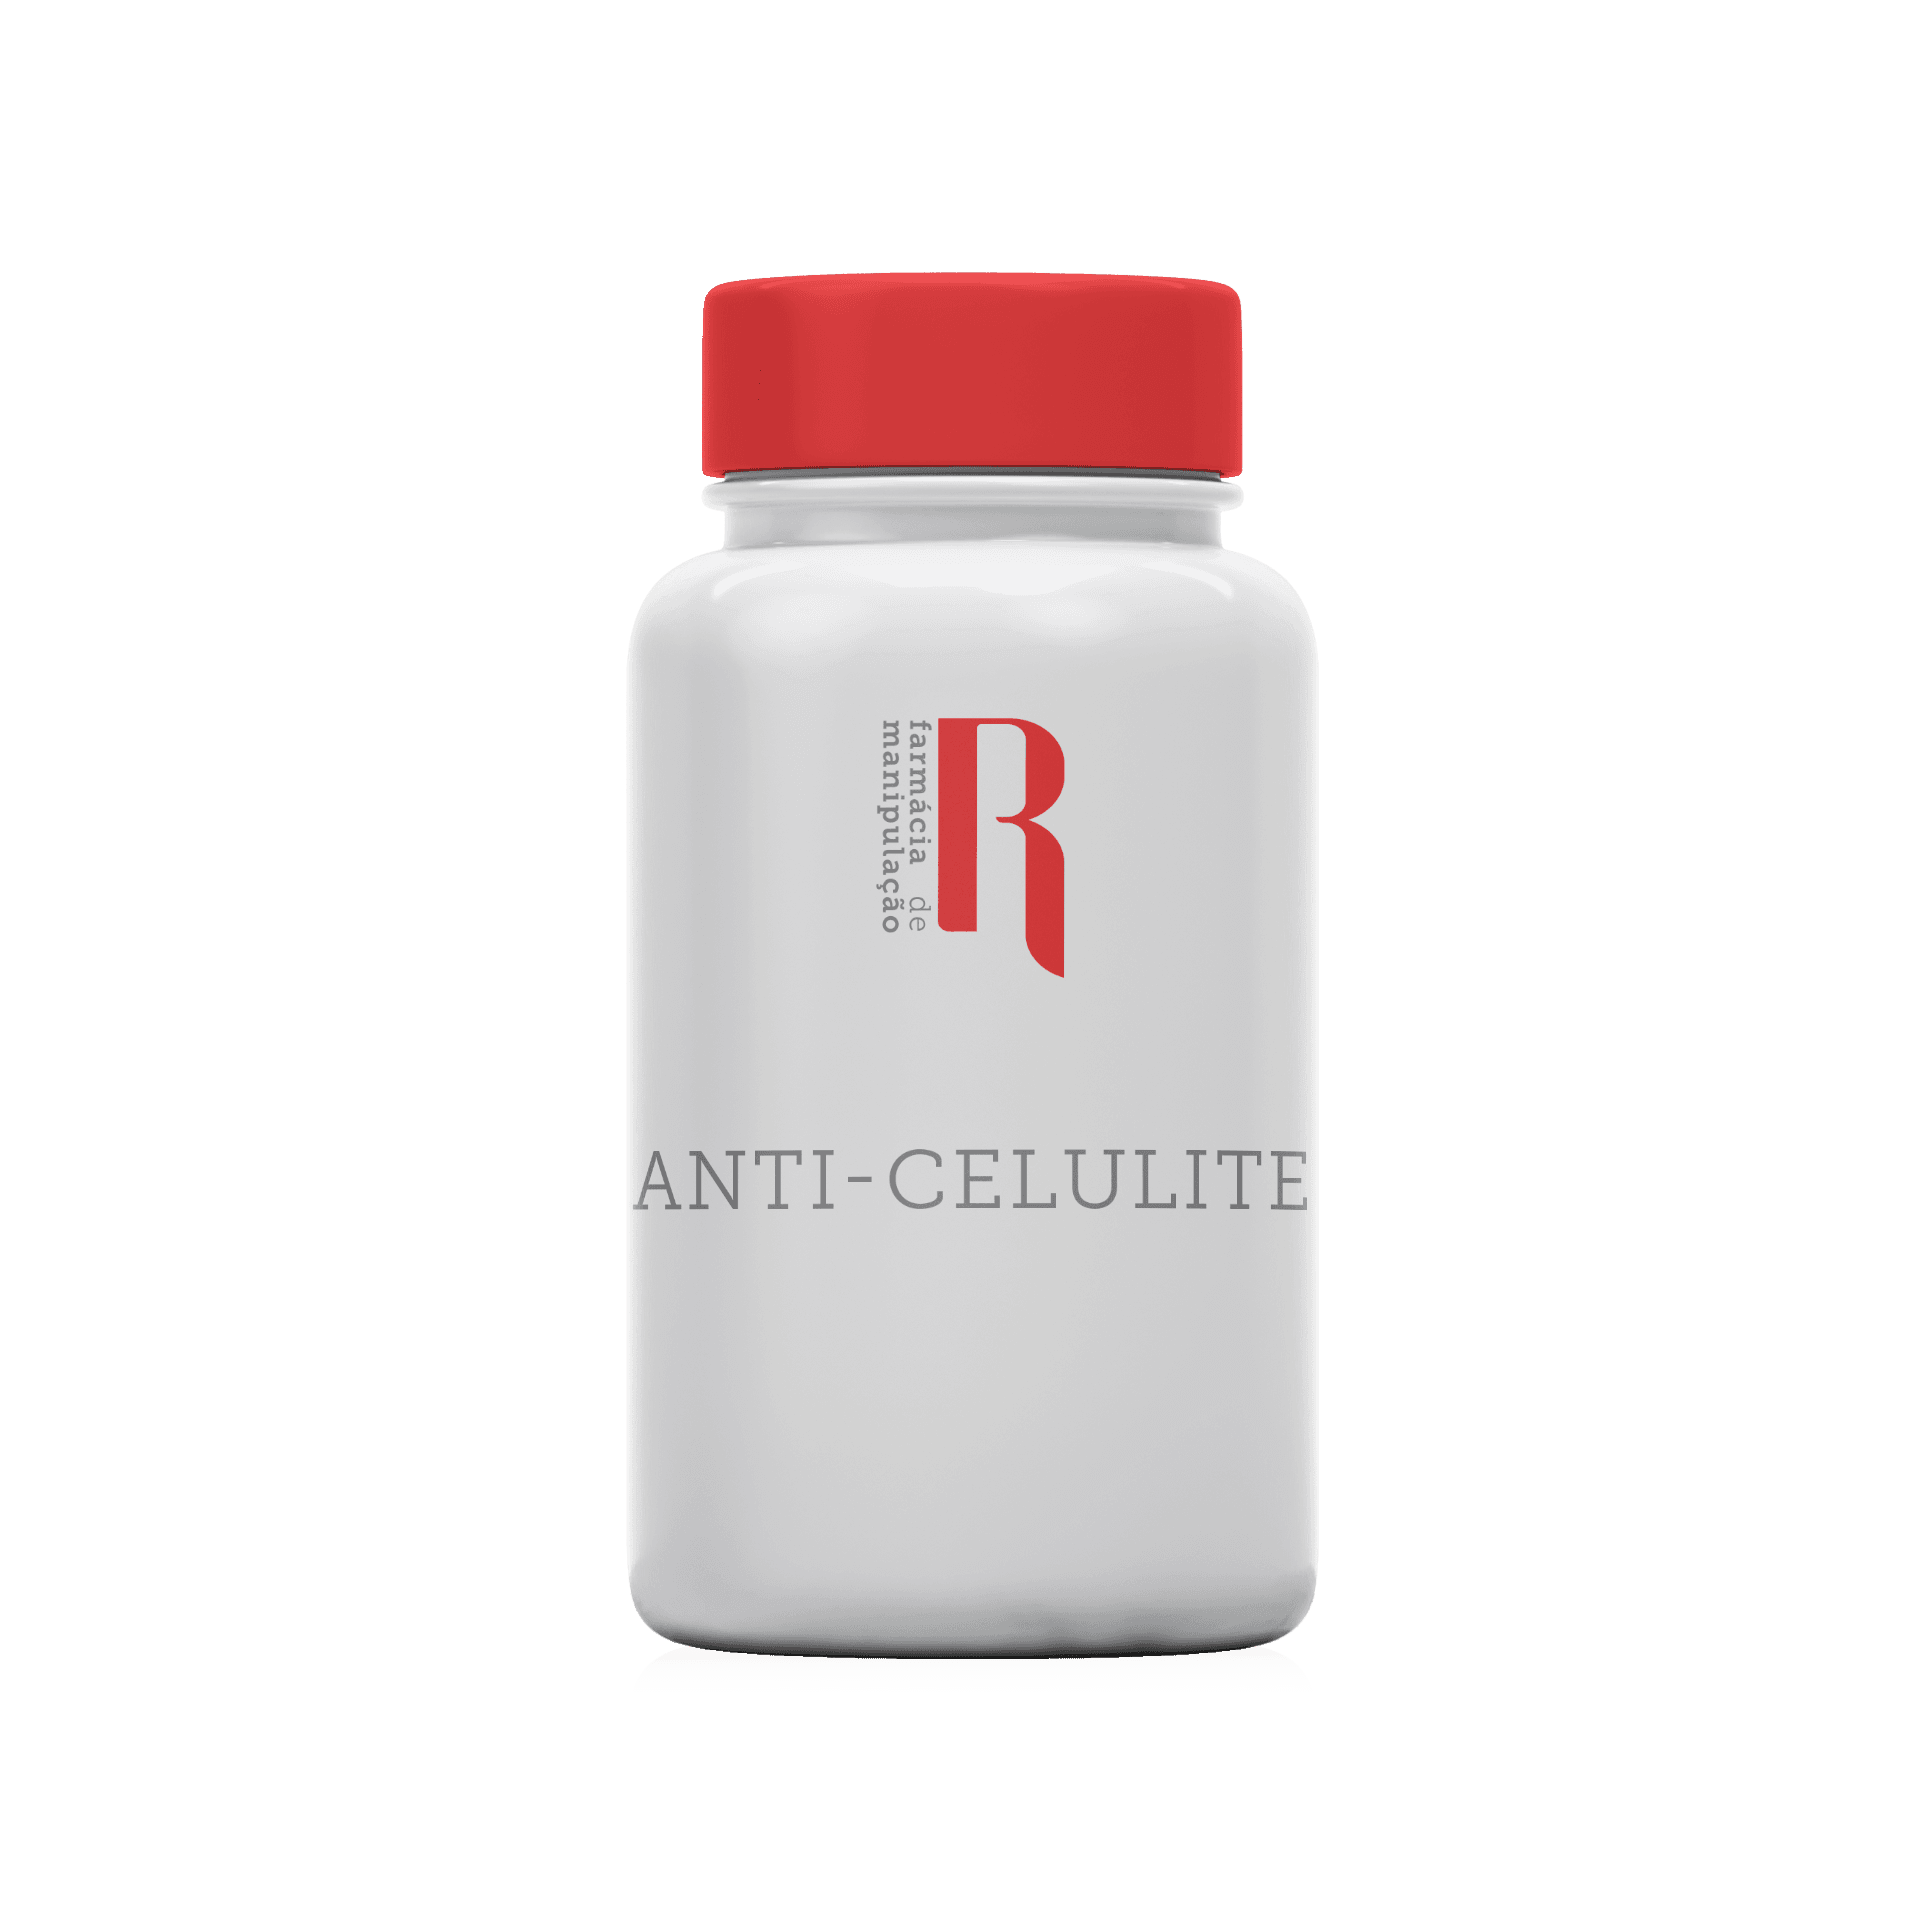 Imagem do Anti-Celulite